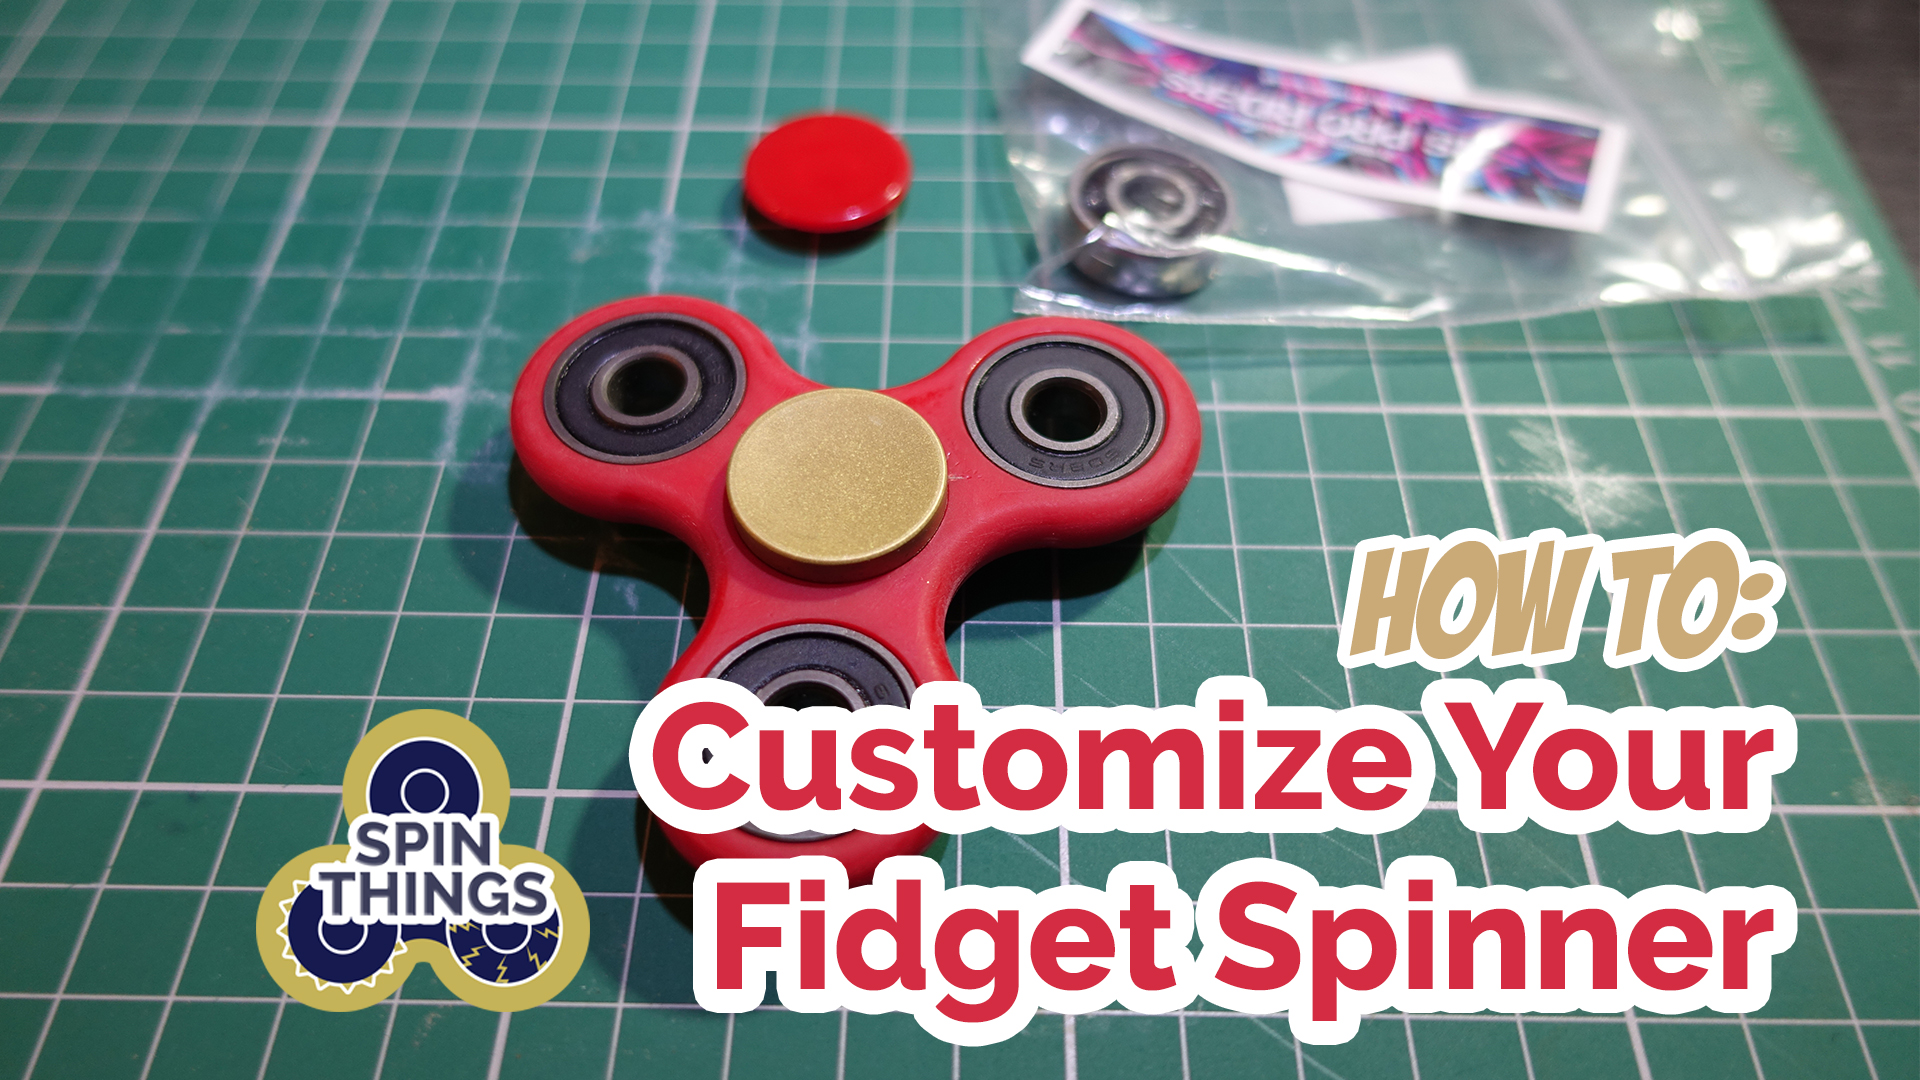 custom spinner cover image